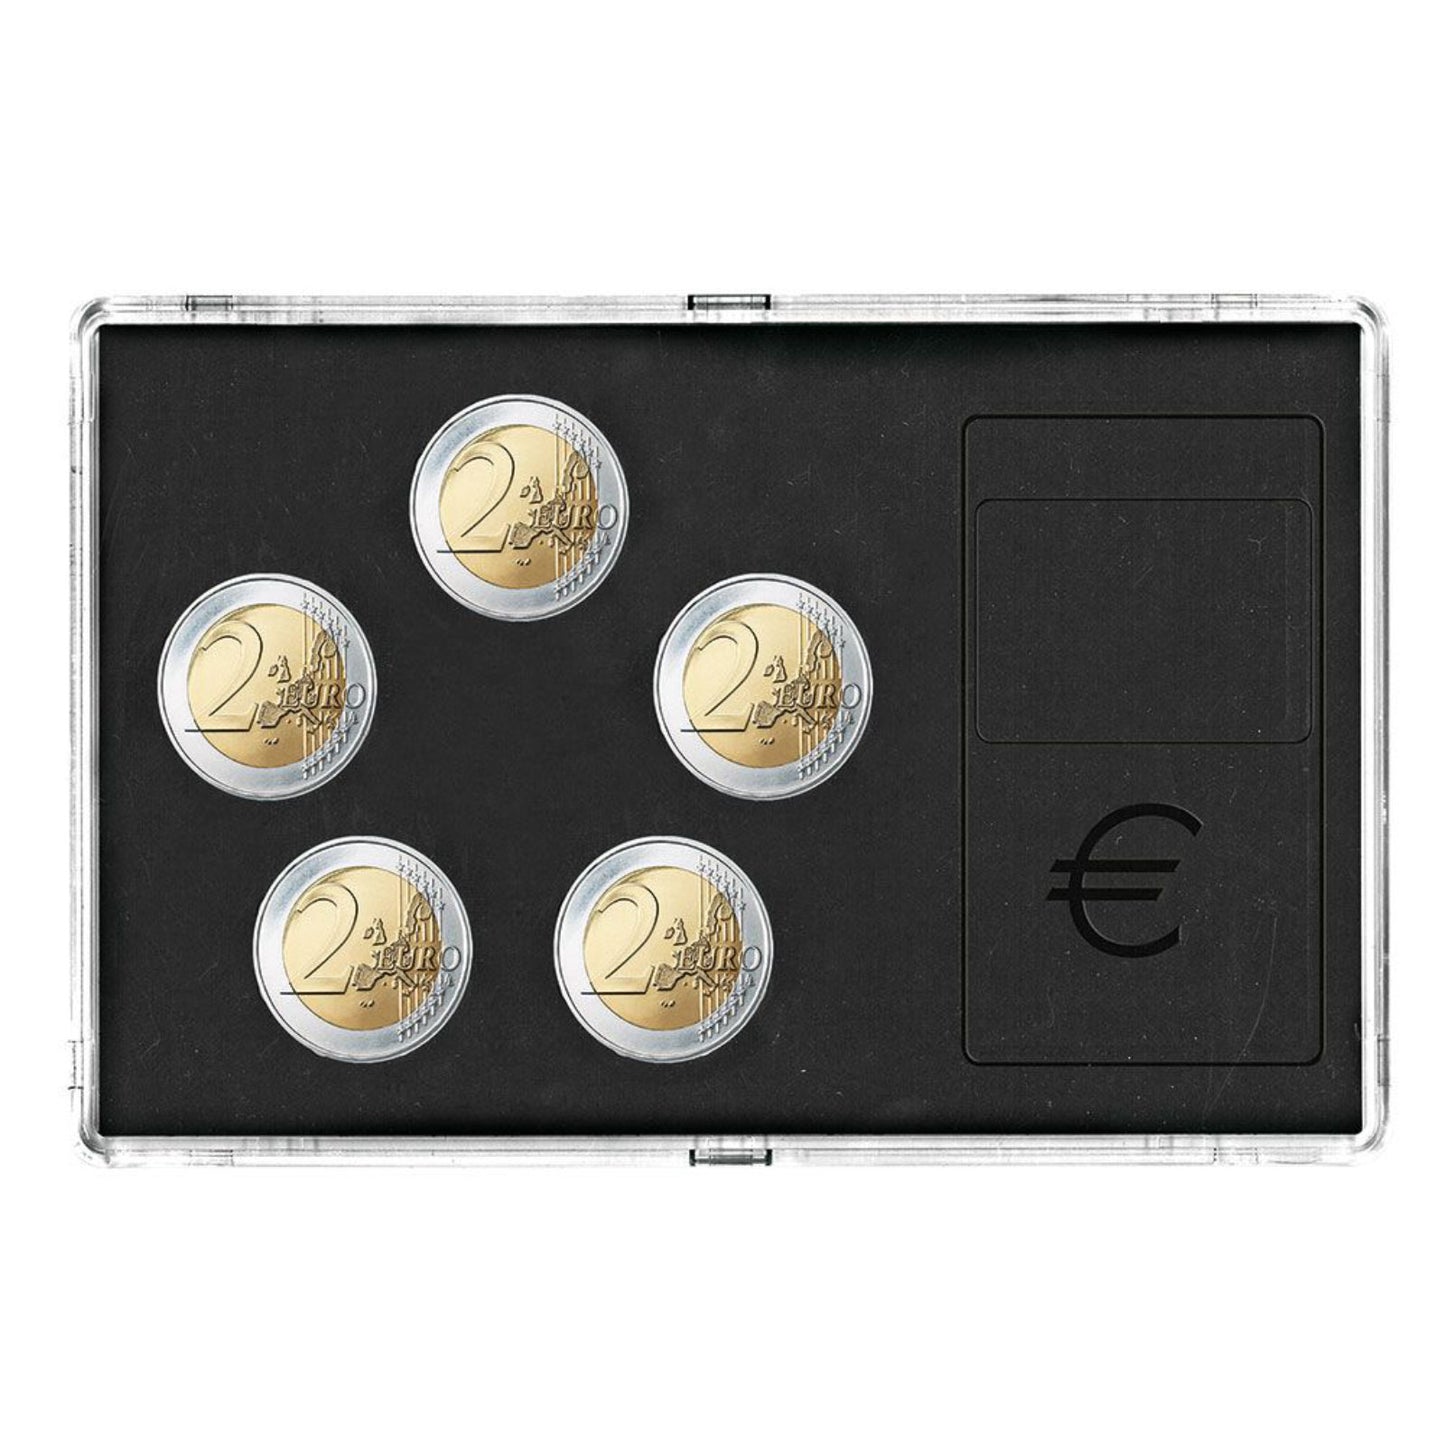 Acryl Münzen Etui - Transparent mit schwarzer Einlage, stapelbar